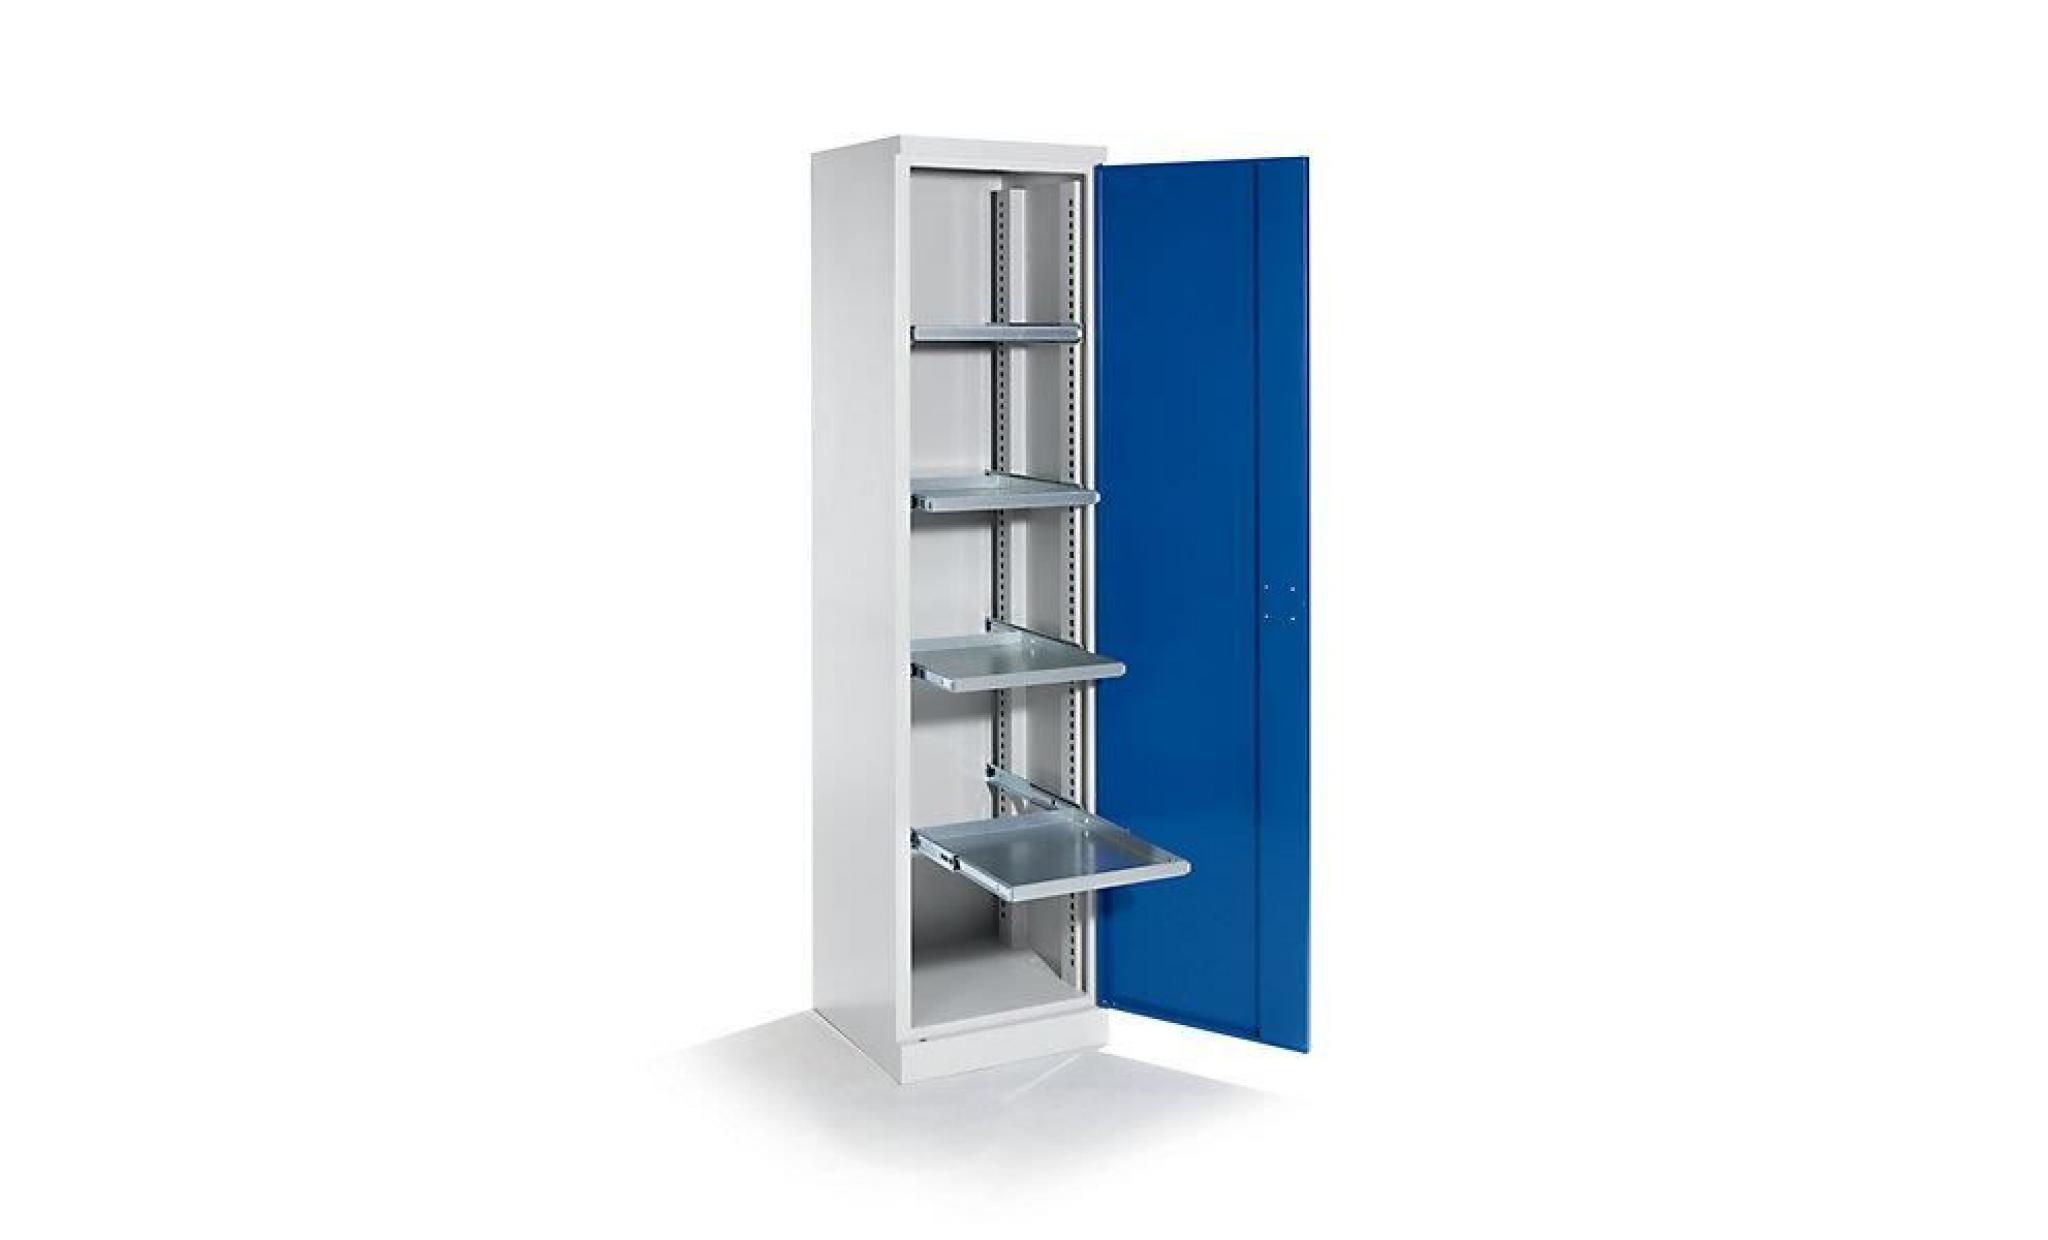 quipo armoire d'atelier   largeur 500 mm, 4 tablettes coulissantes   porte bleu gentiane   armoire d'atelier armoire métallique pas cher